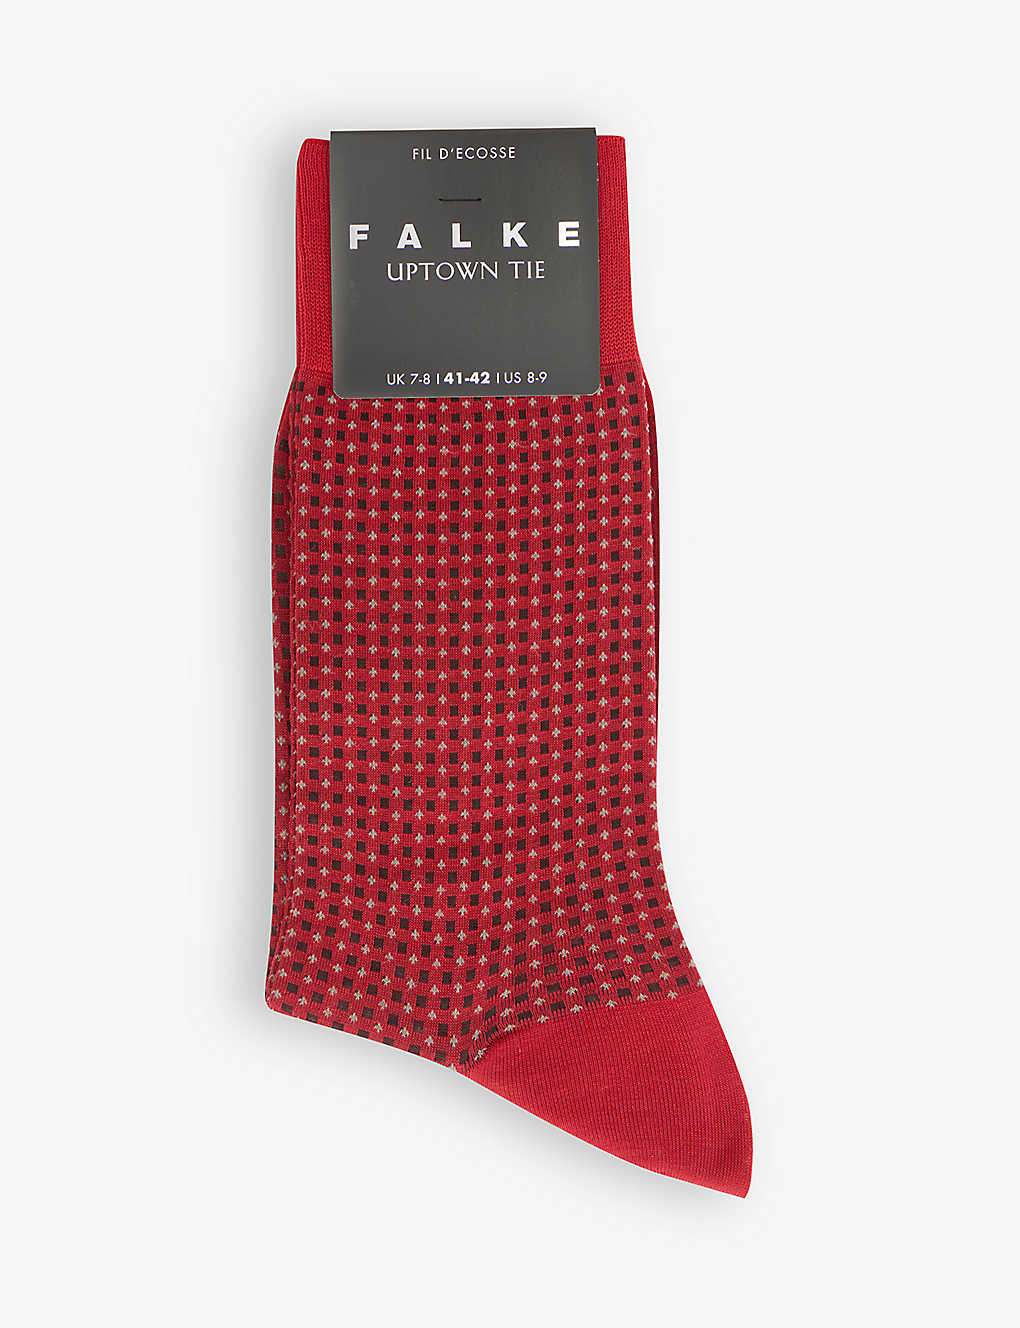 Falke 'uptown Tie' Geometric Pattern Cotton Blend Socks In Red